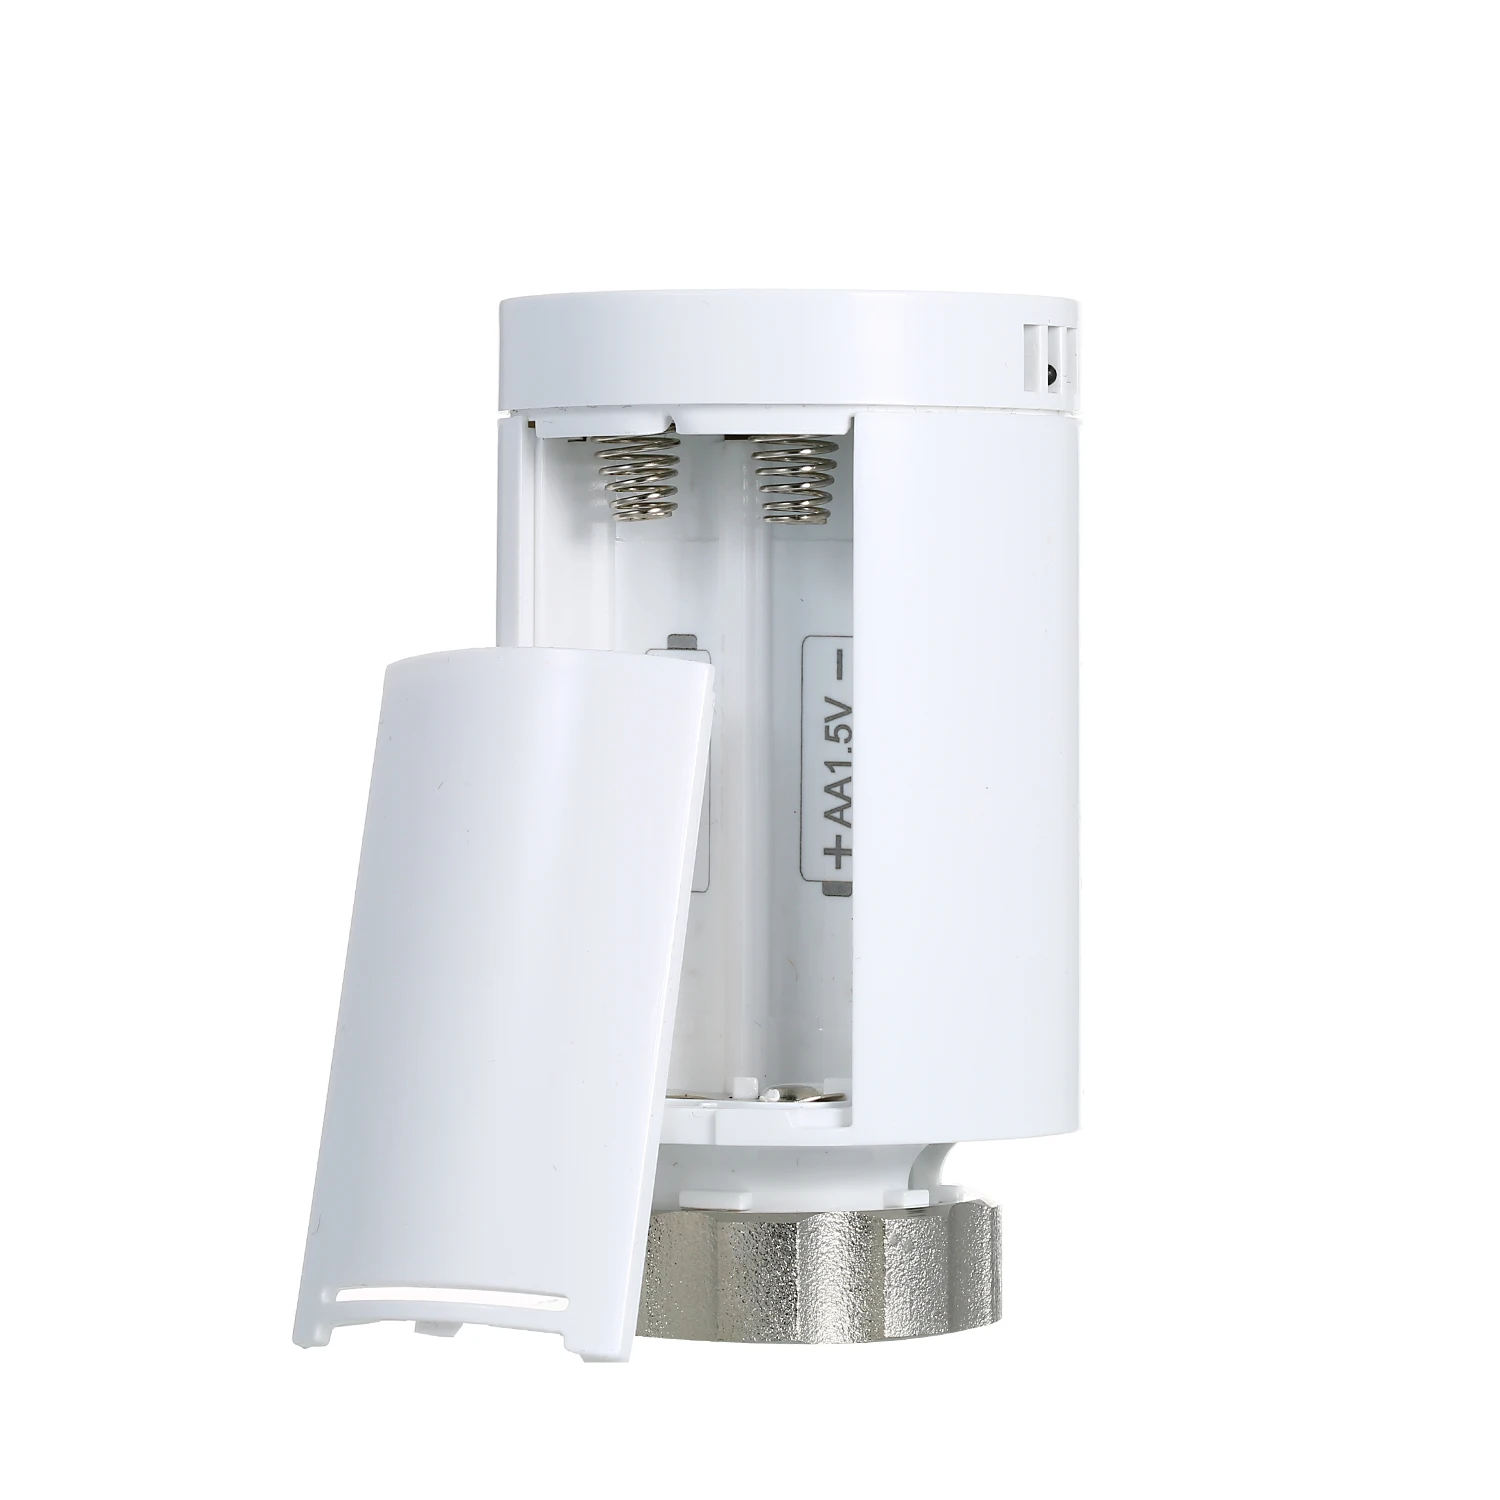 SEA801-APP TRV термостат регулятор температуры нагрева и точный термостатический клапан радиатора программируемый голосовой контроллер